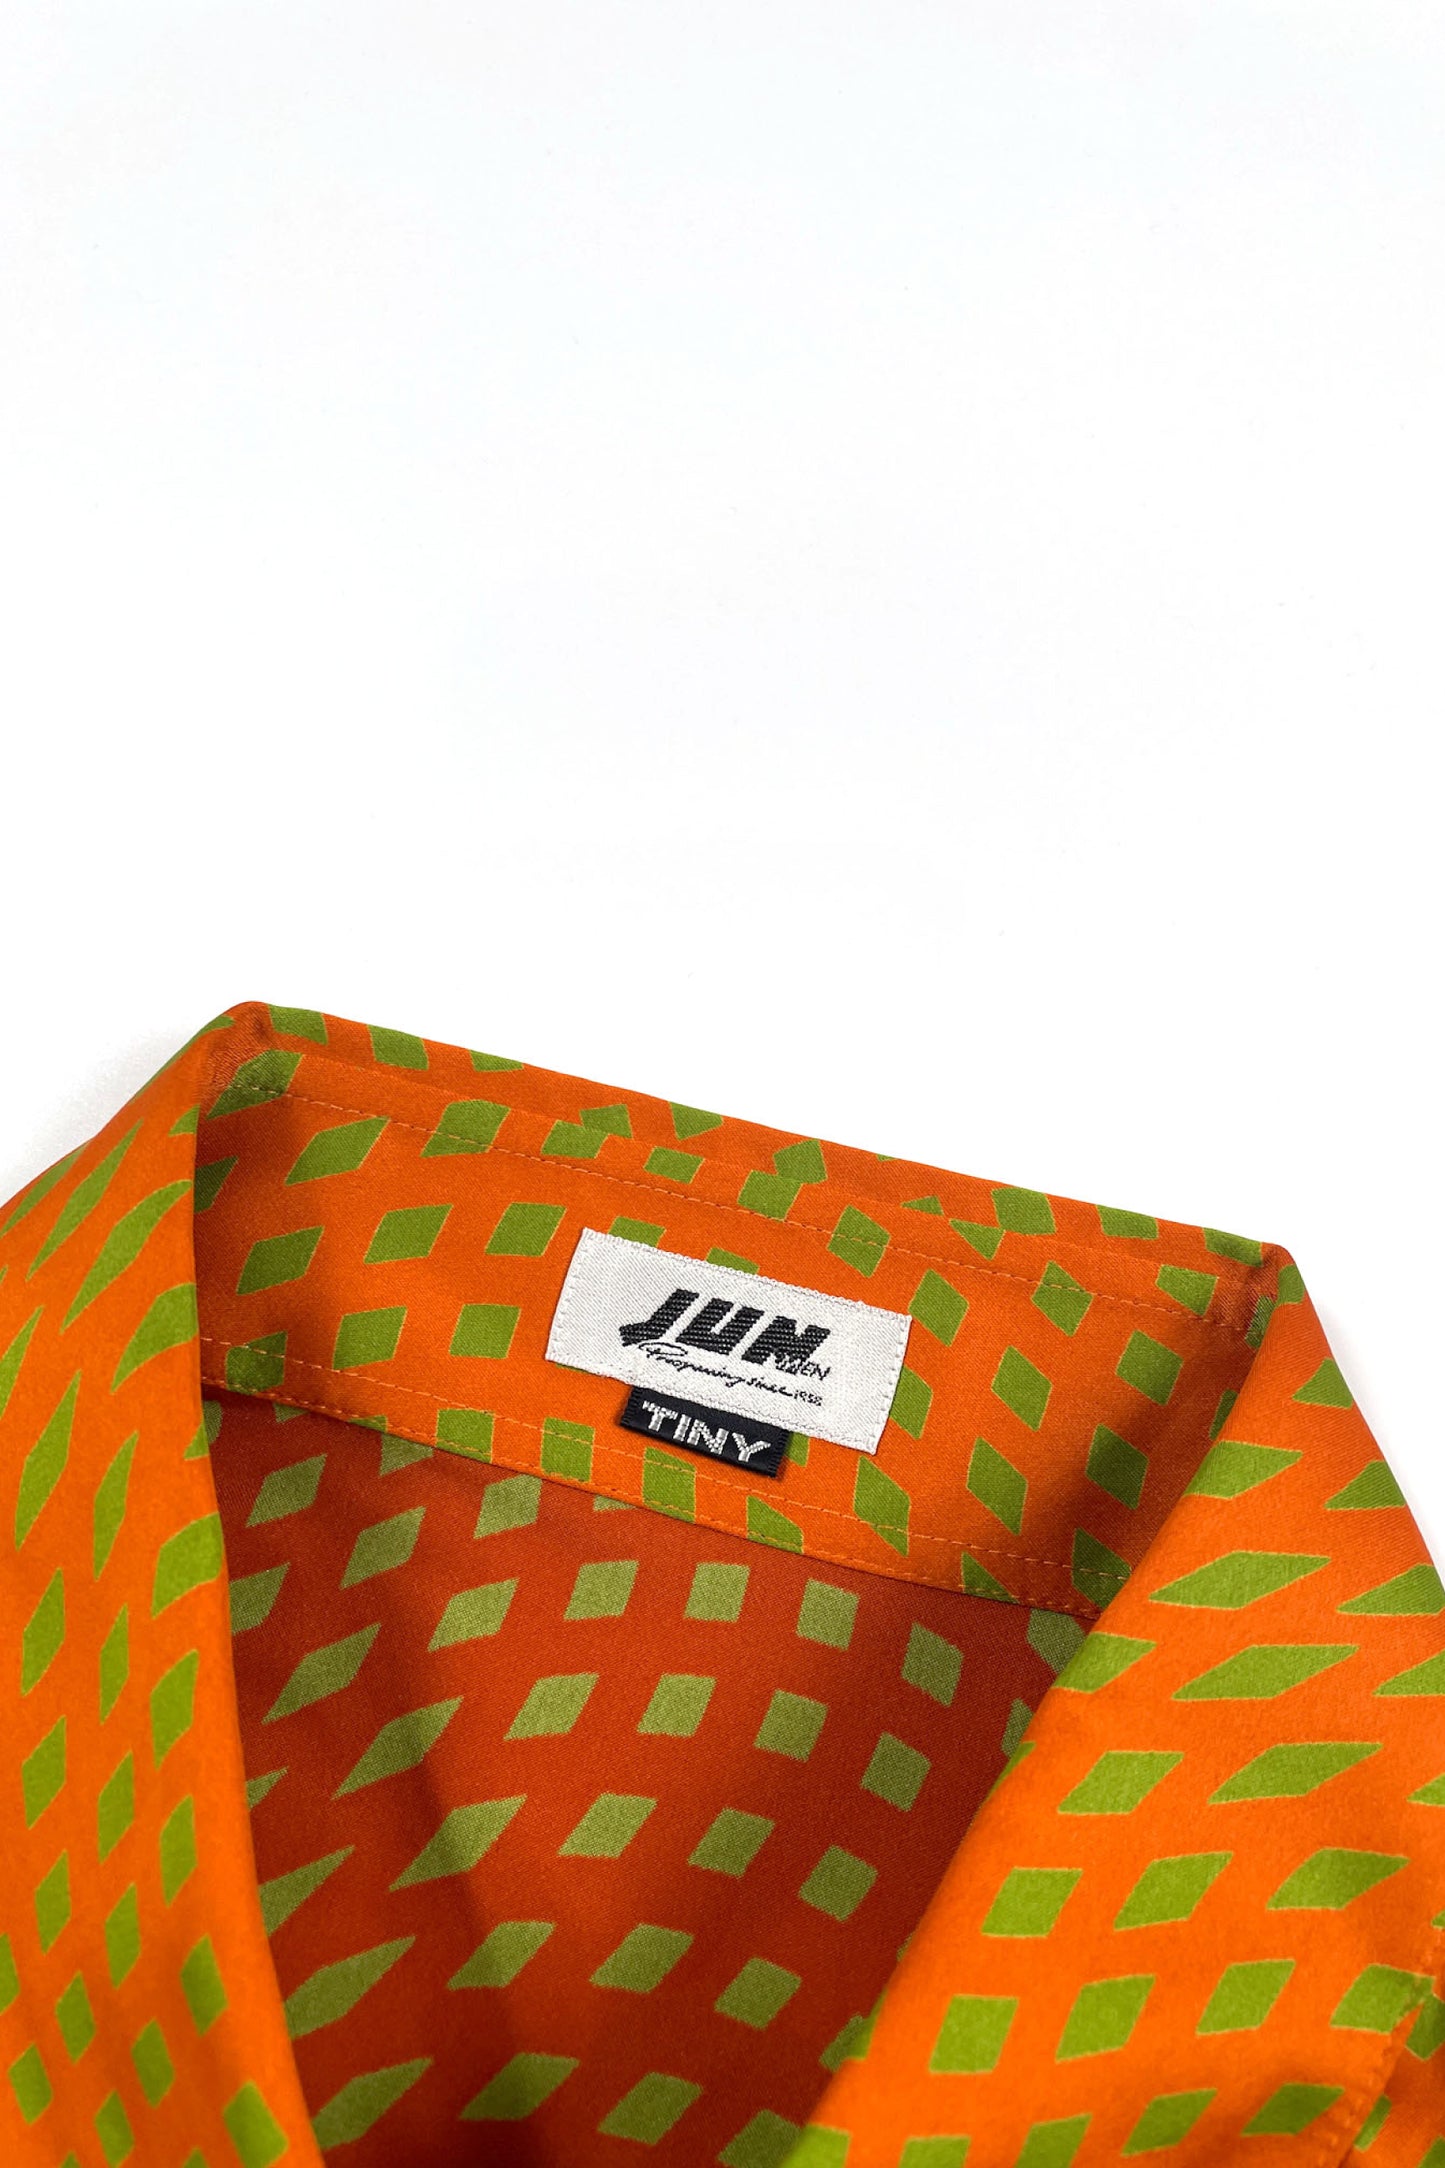 90's JUN pattern shirt